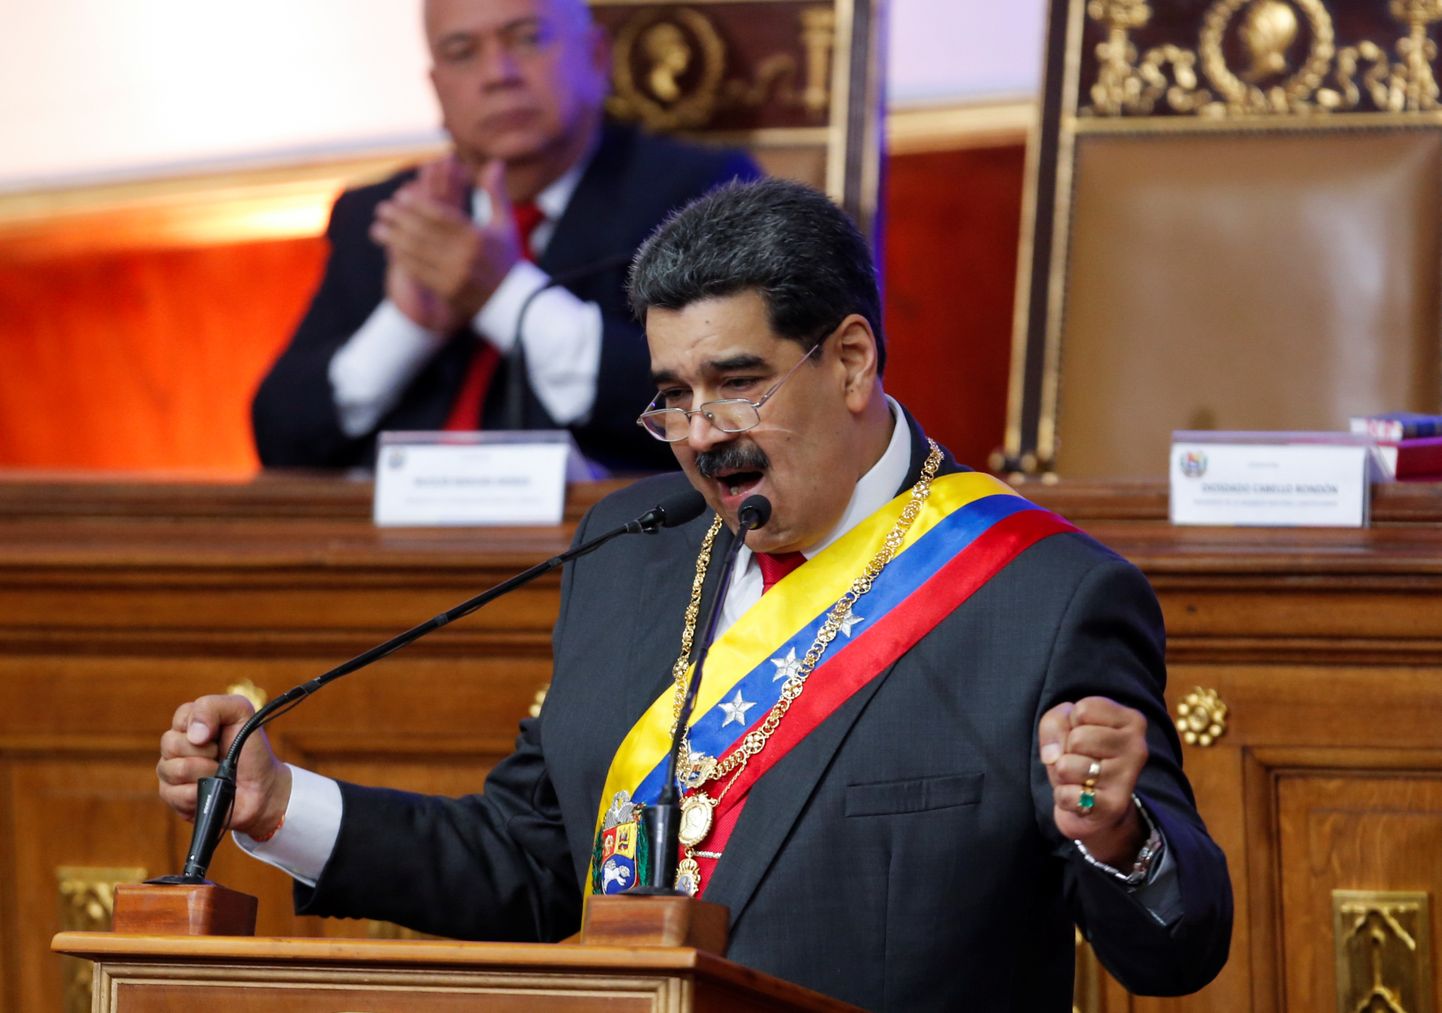 Venezuela president Nicolas Maduro kõnet pidamas. Foto on illustratiivne.